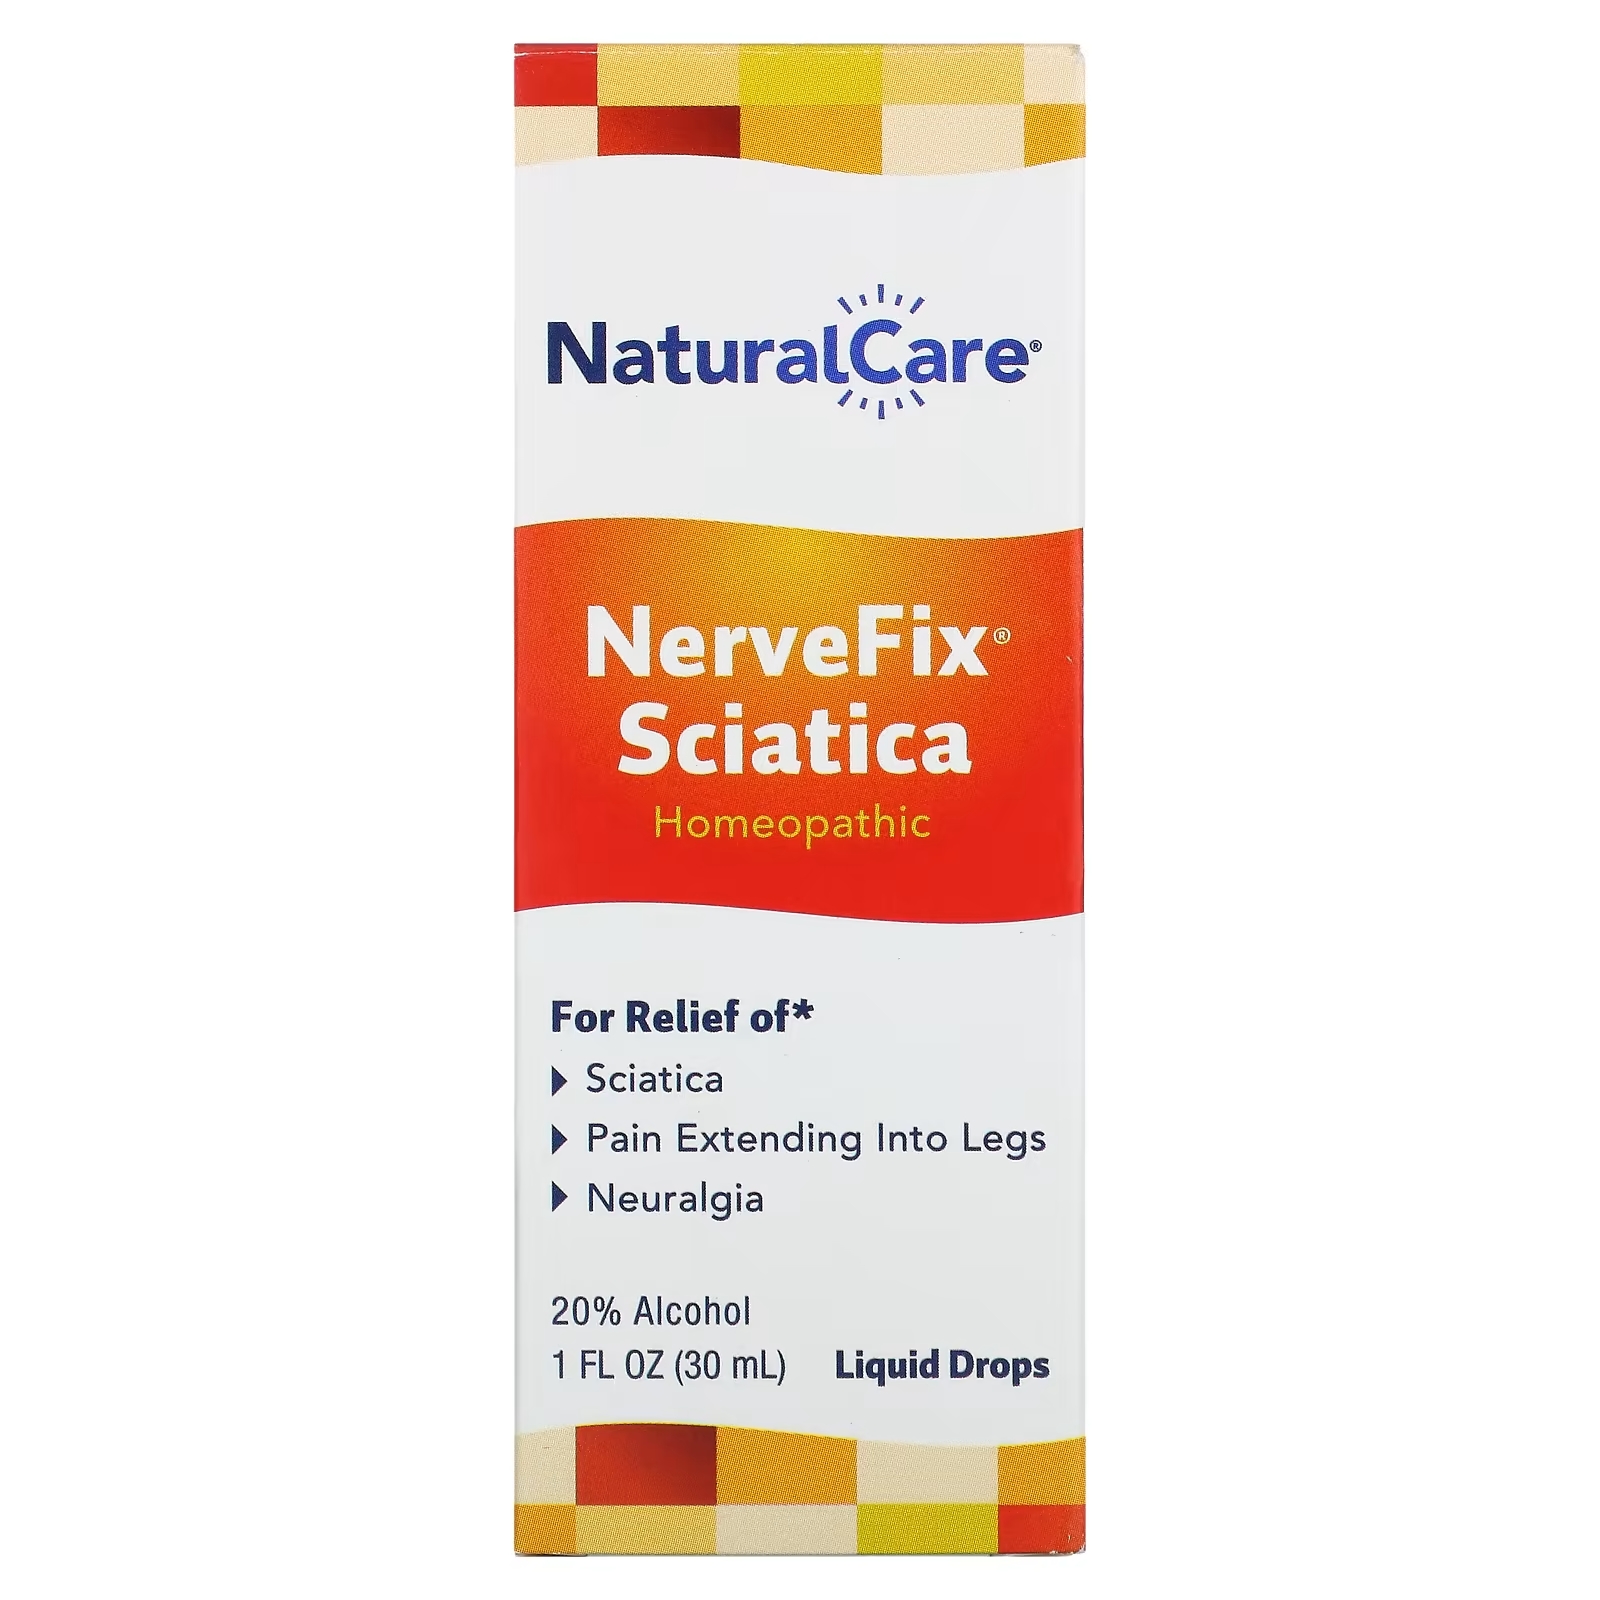 NatraBio NerveFix Sciatica натуральное средство от ишиаса и неврологических болей, 30 мл